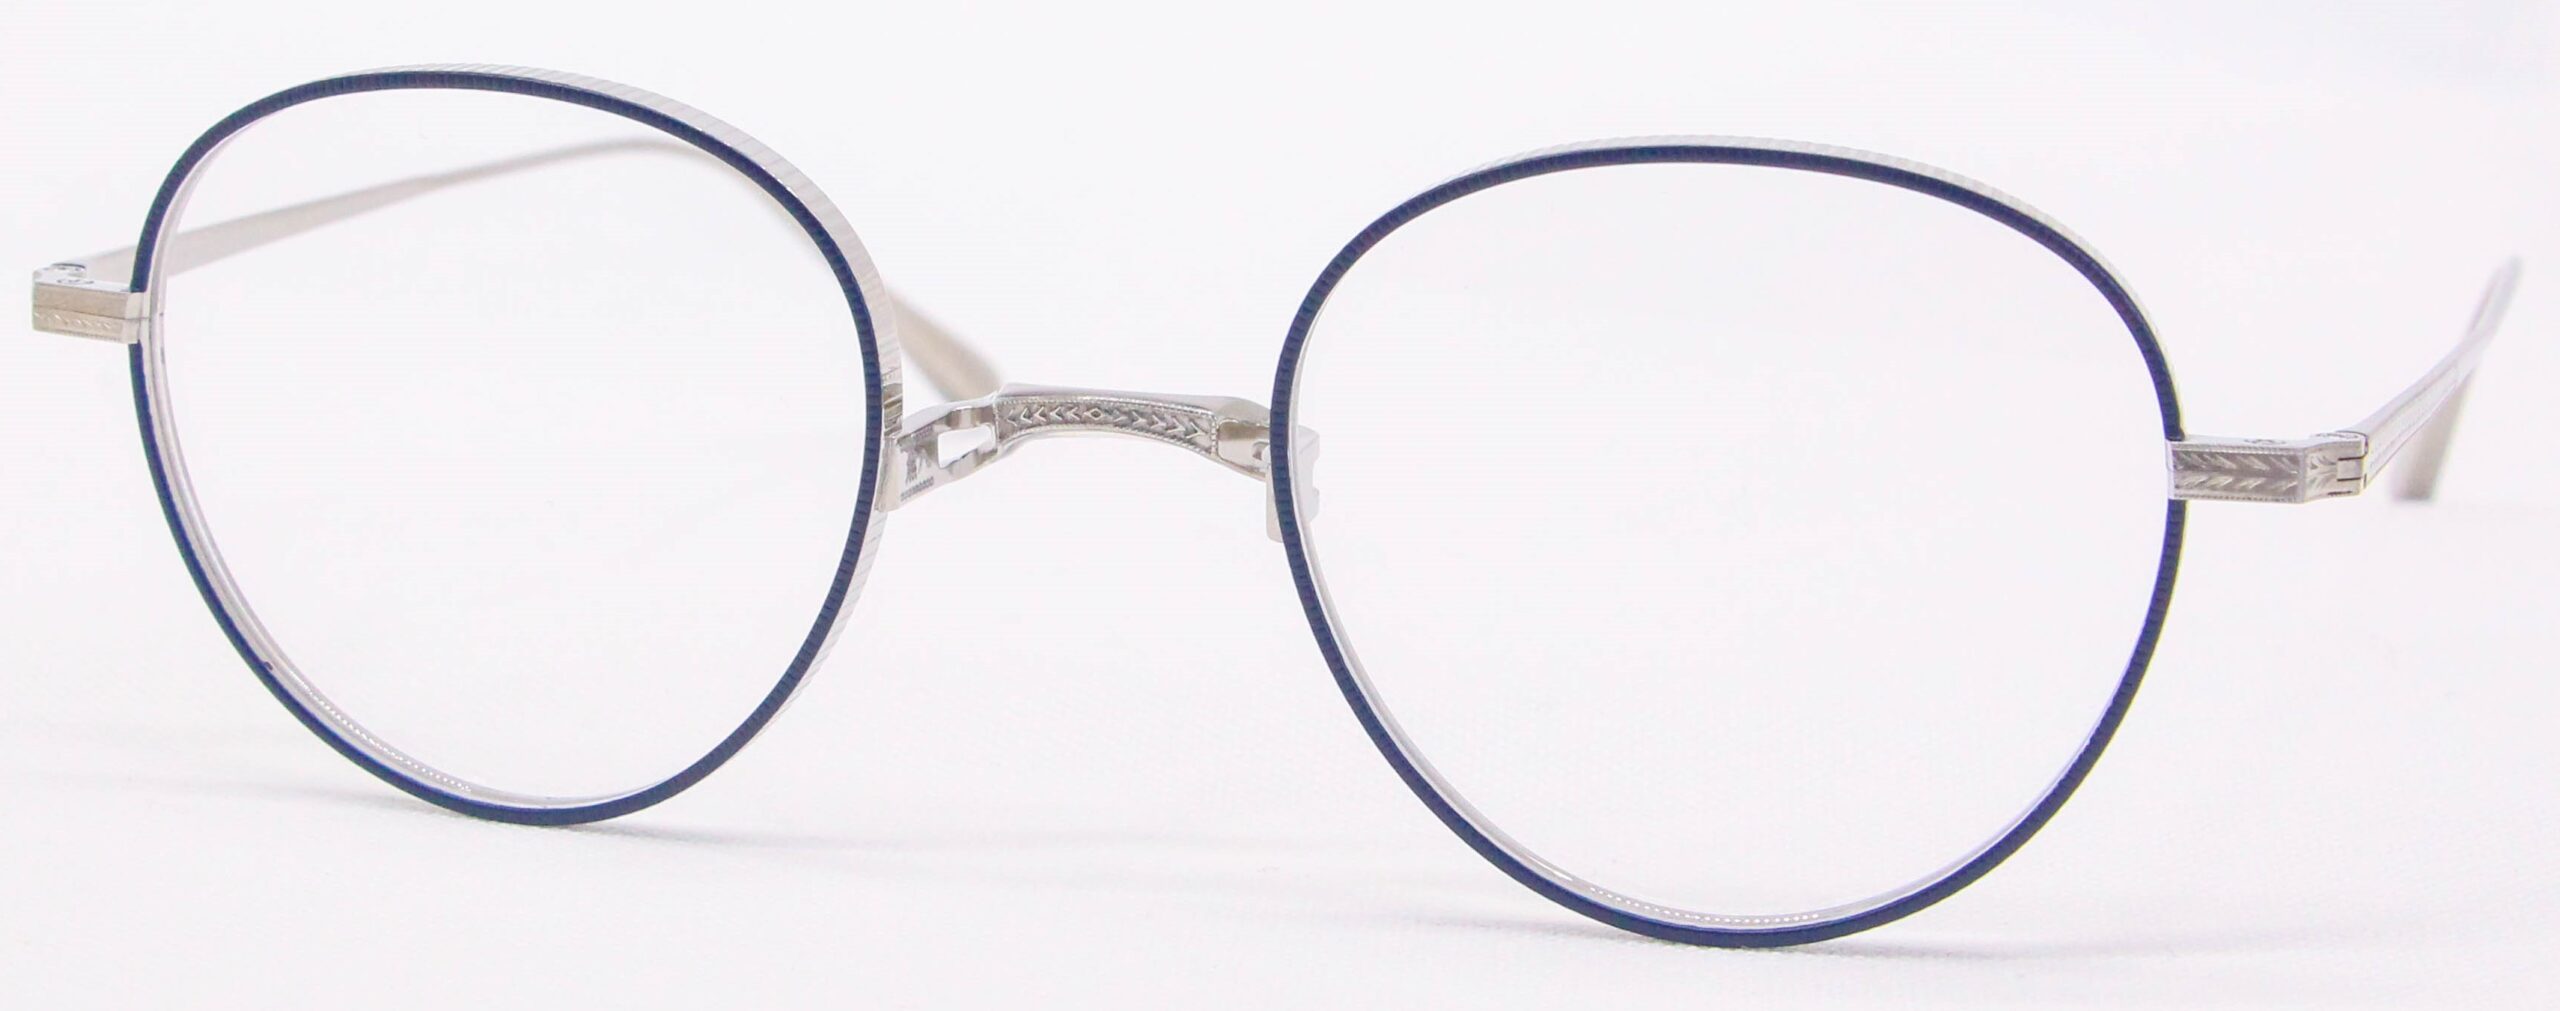 眼鏡のカラータイプC-2 Blue-Matt/Silver